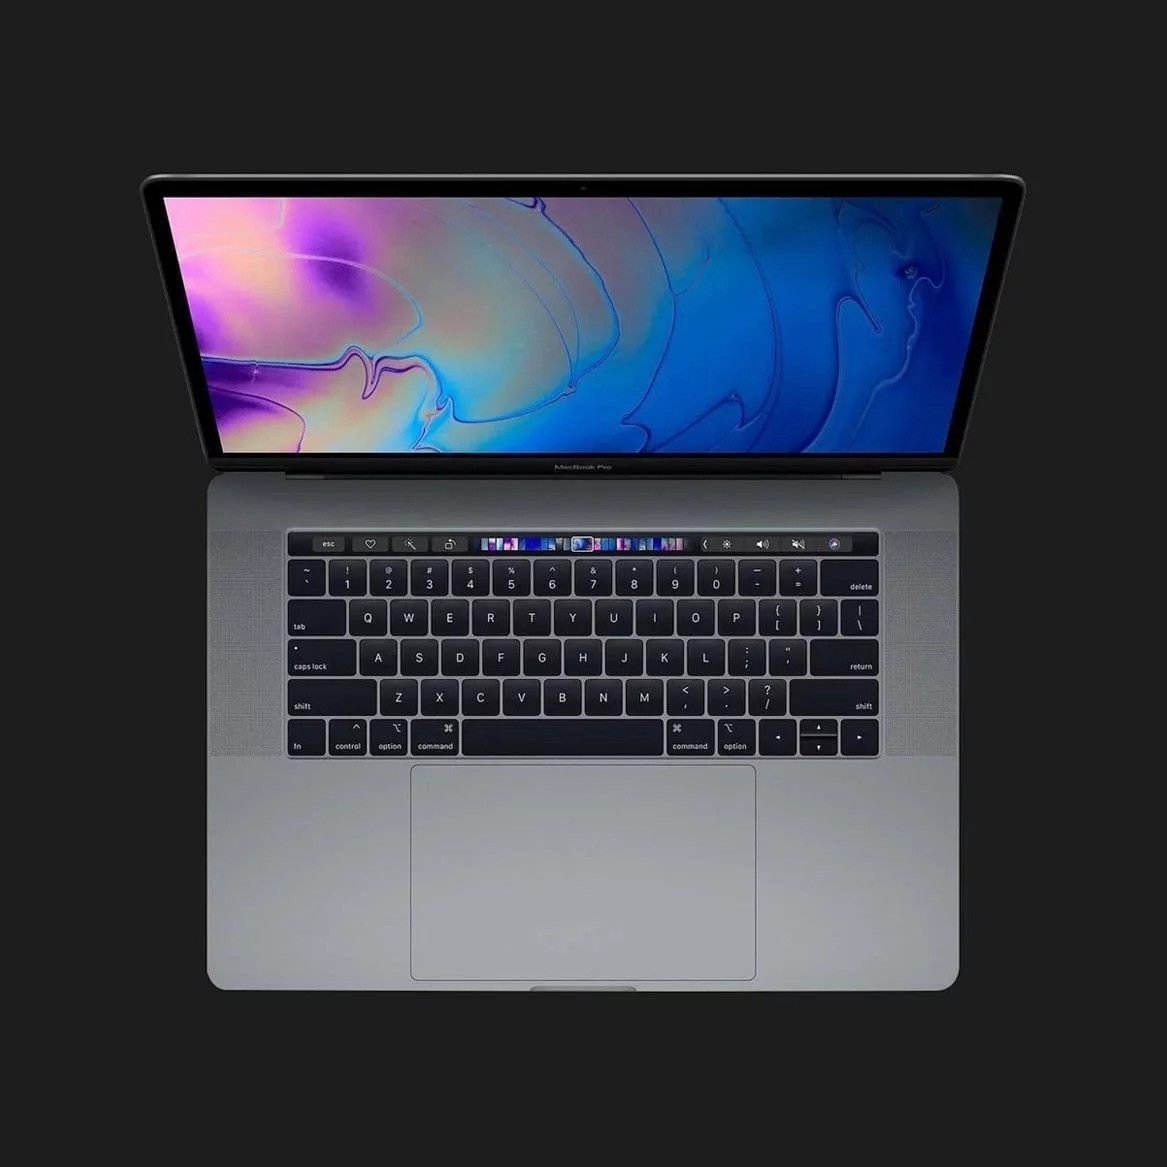 б/у Apple MacBook Pro 15, 2019 (512GB) (MV912) (Відмінний стан)